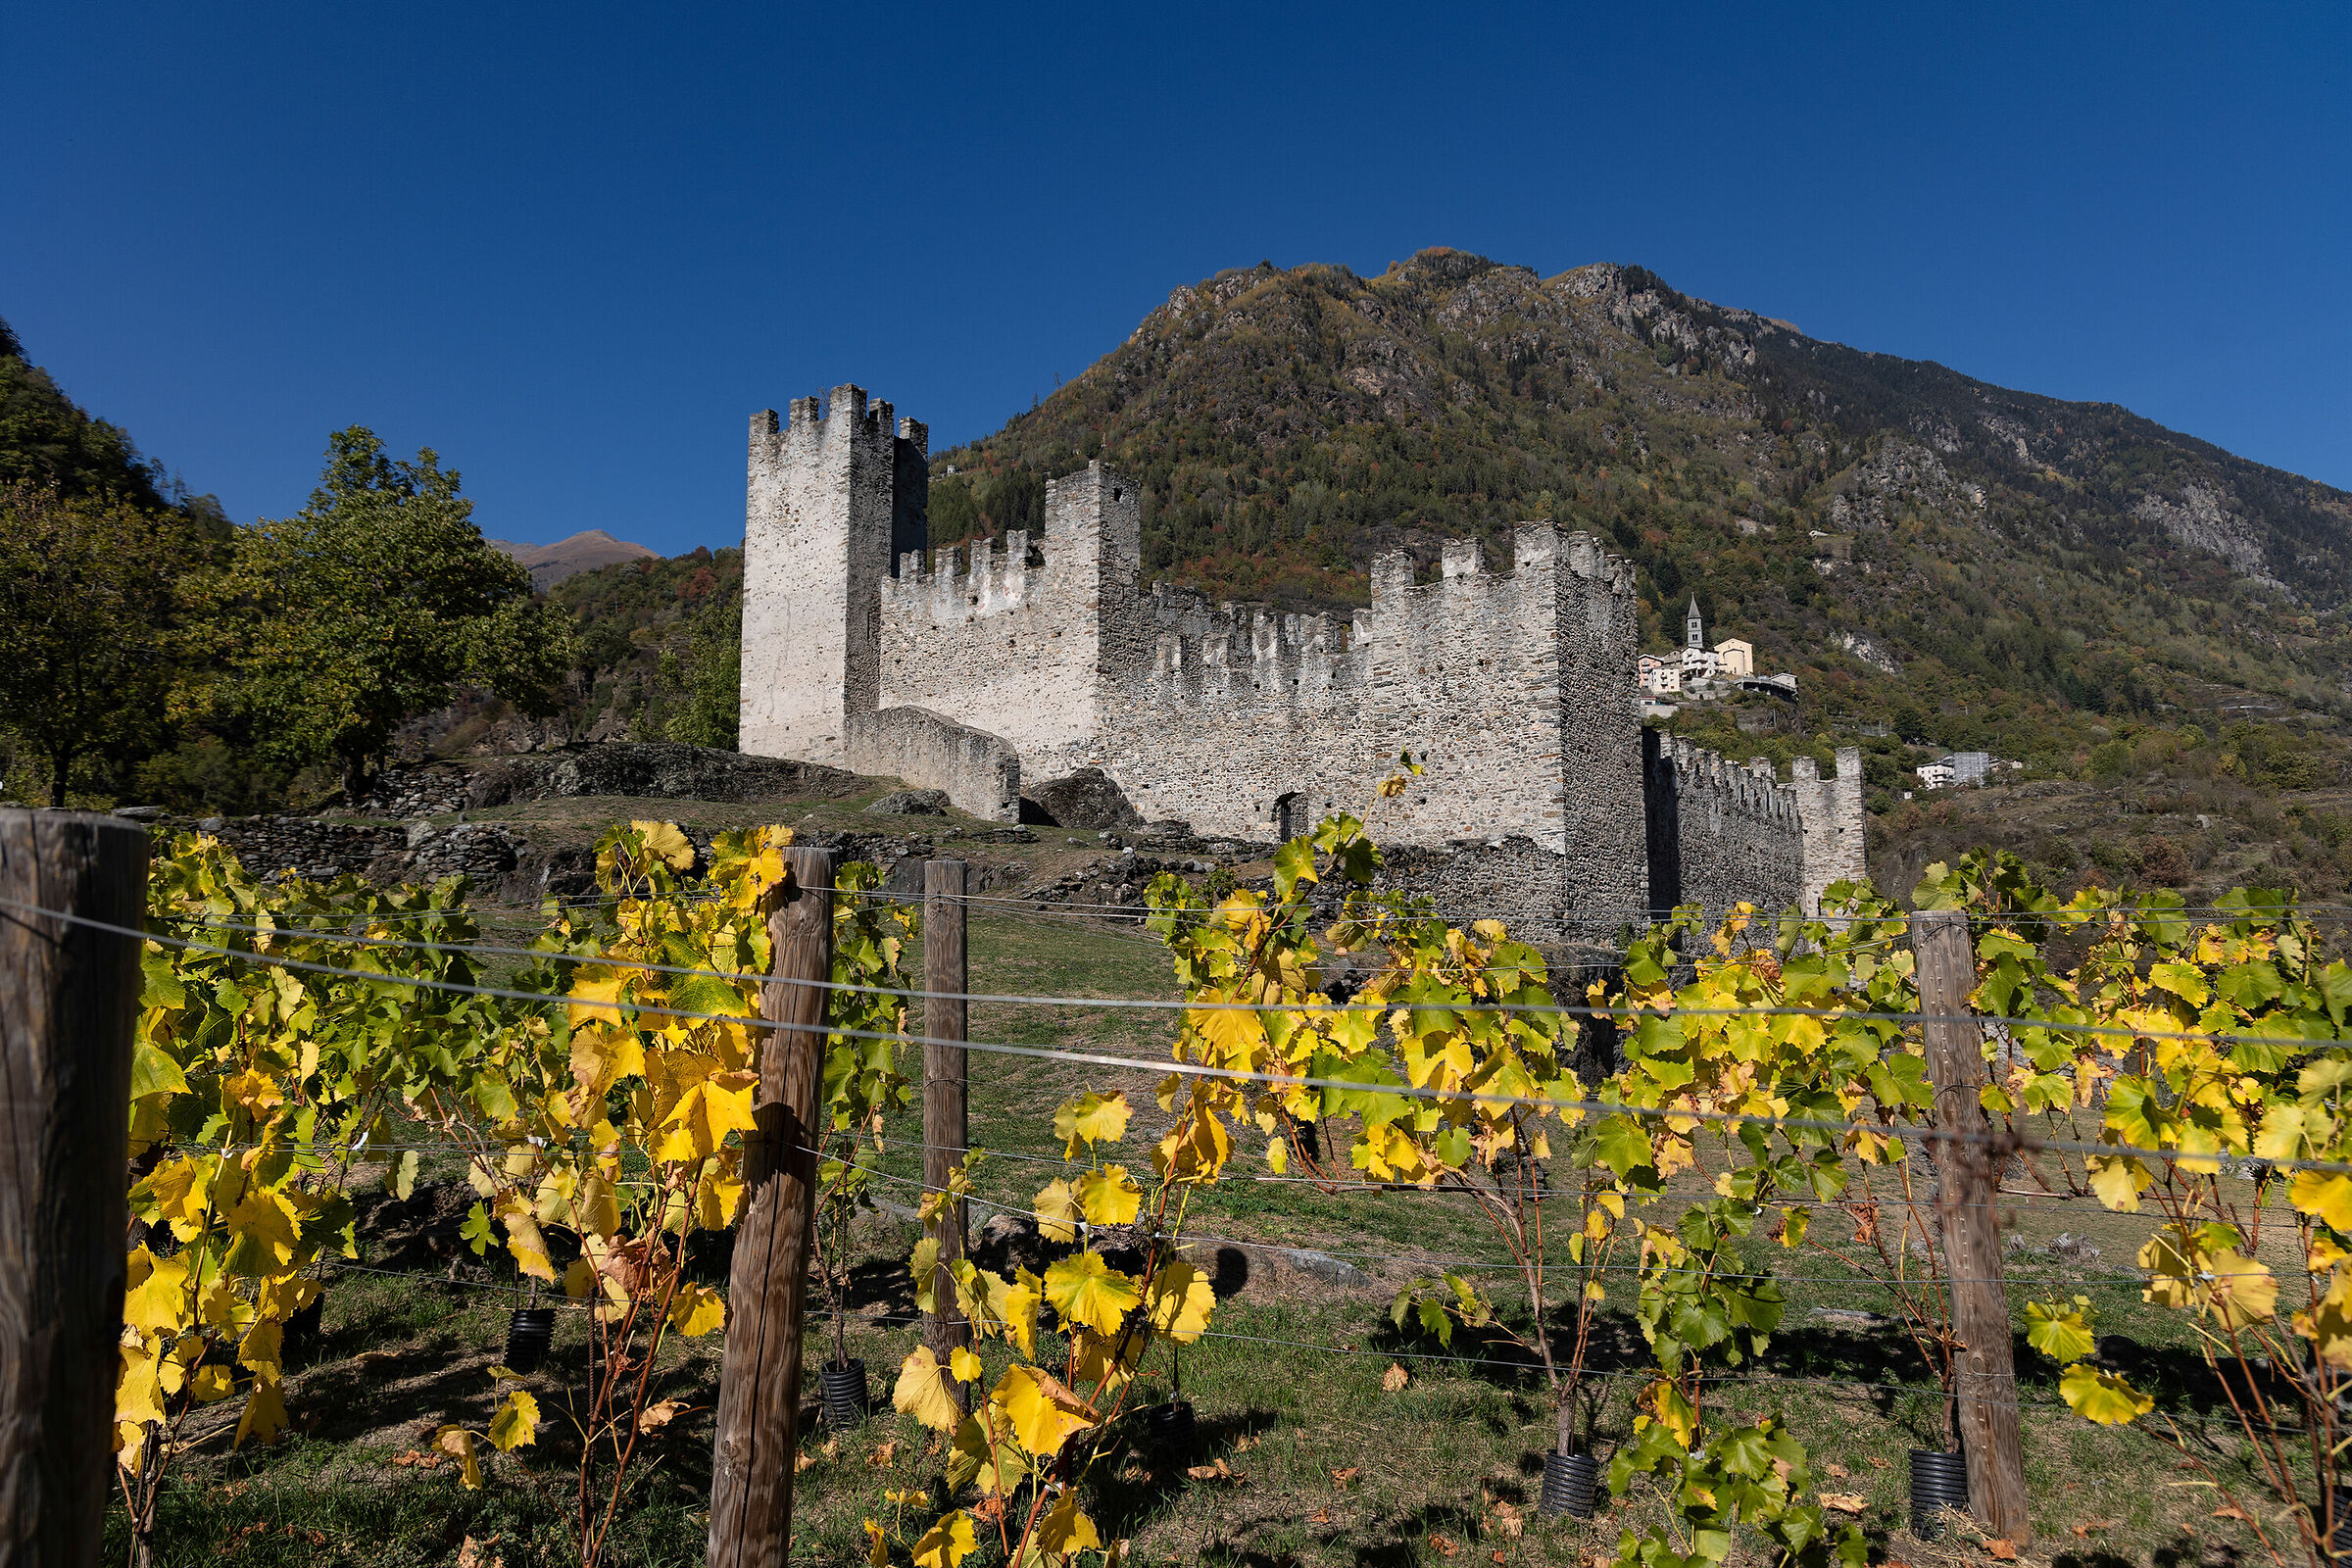 Autumn at the Visconti Venosta castle in Grosio...